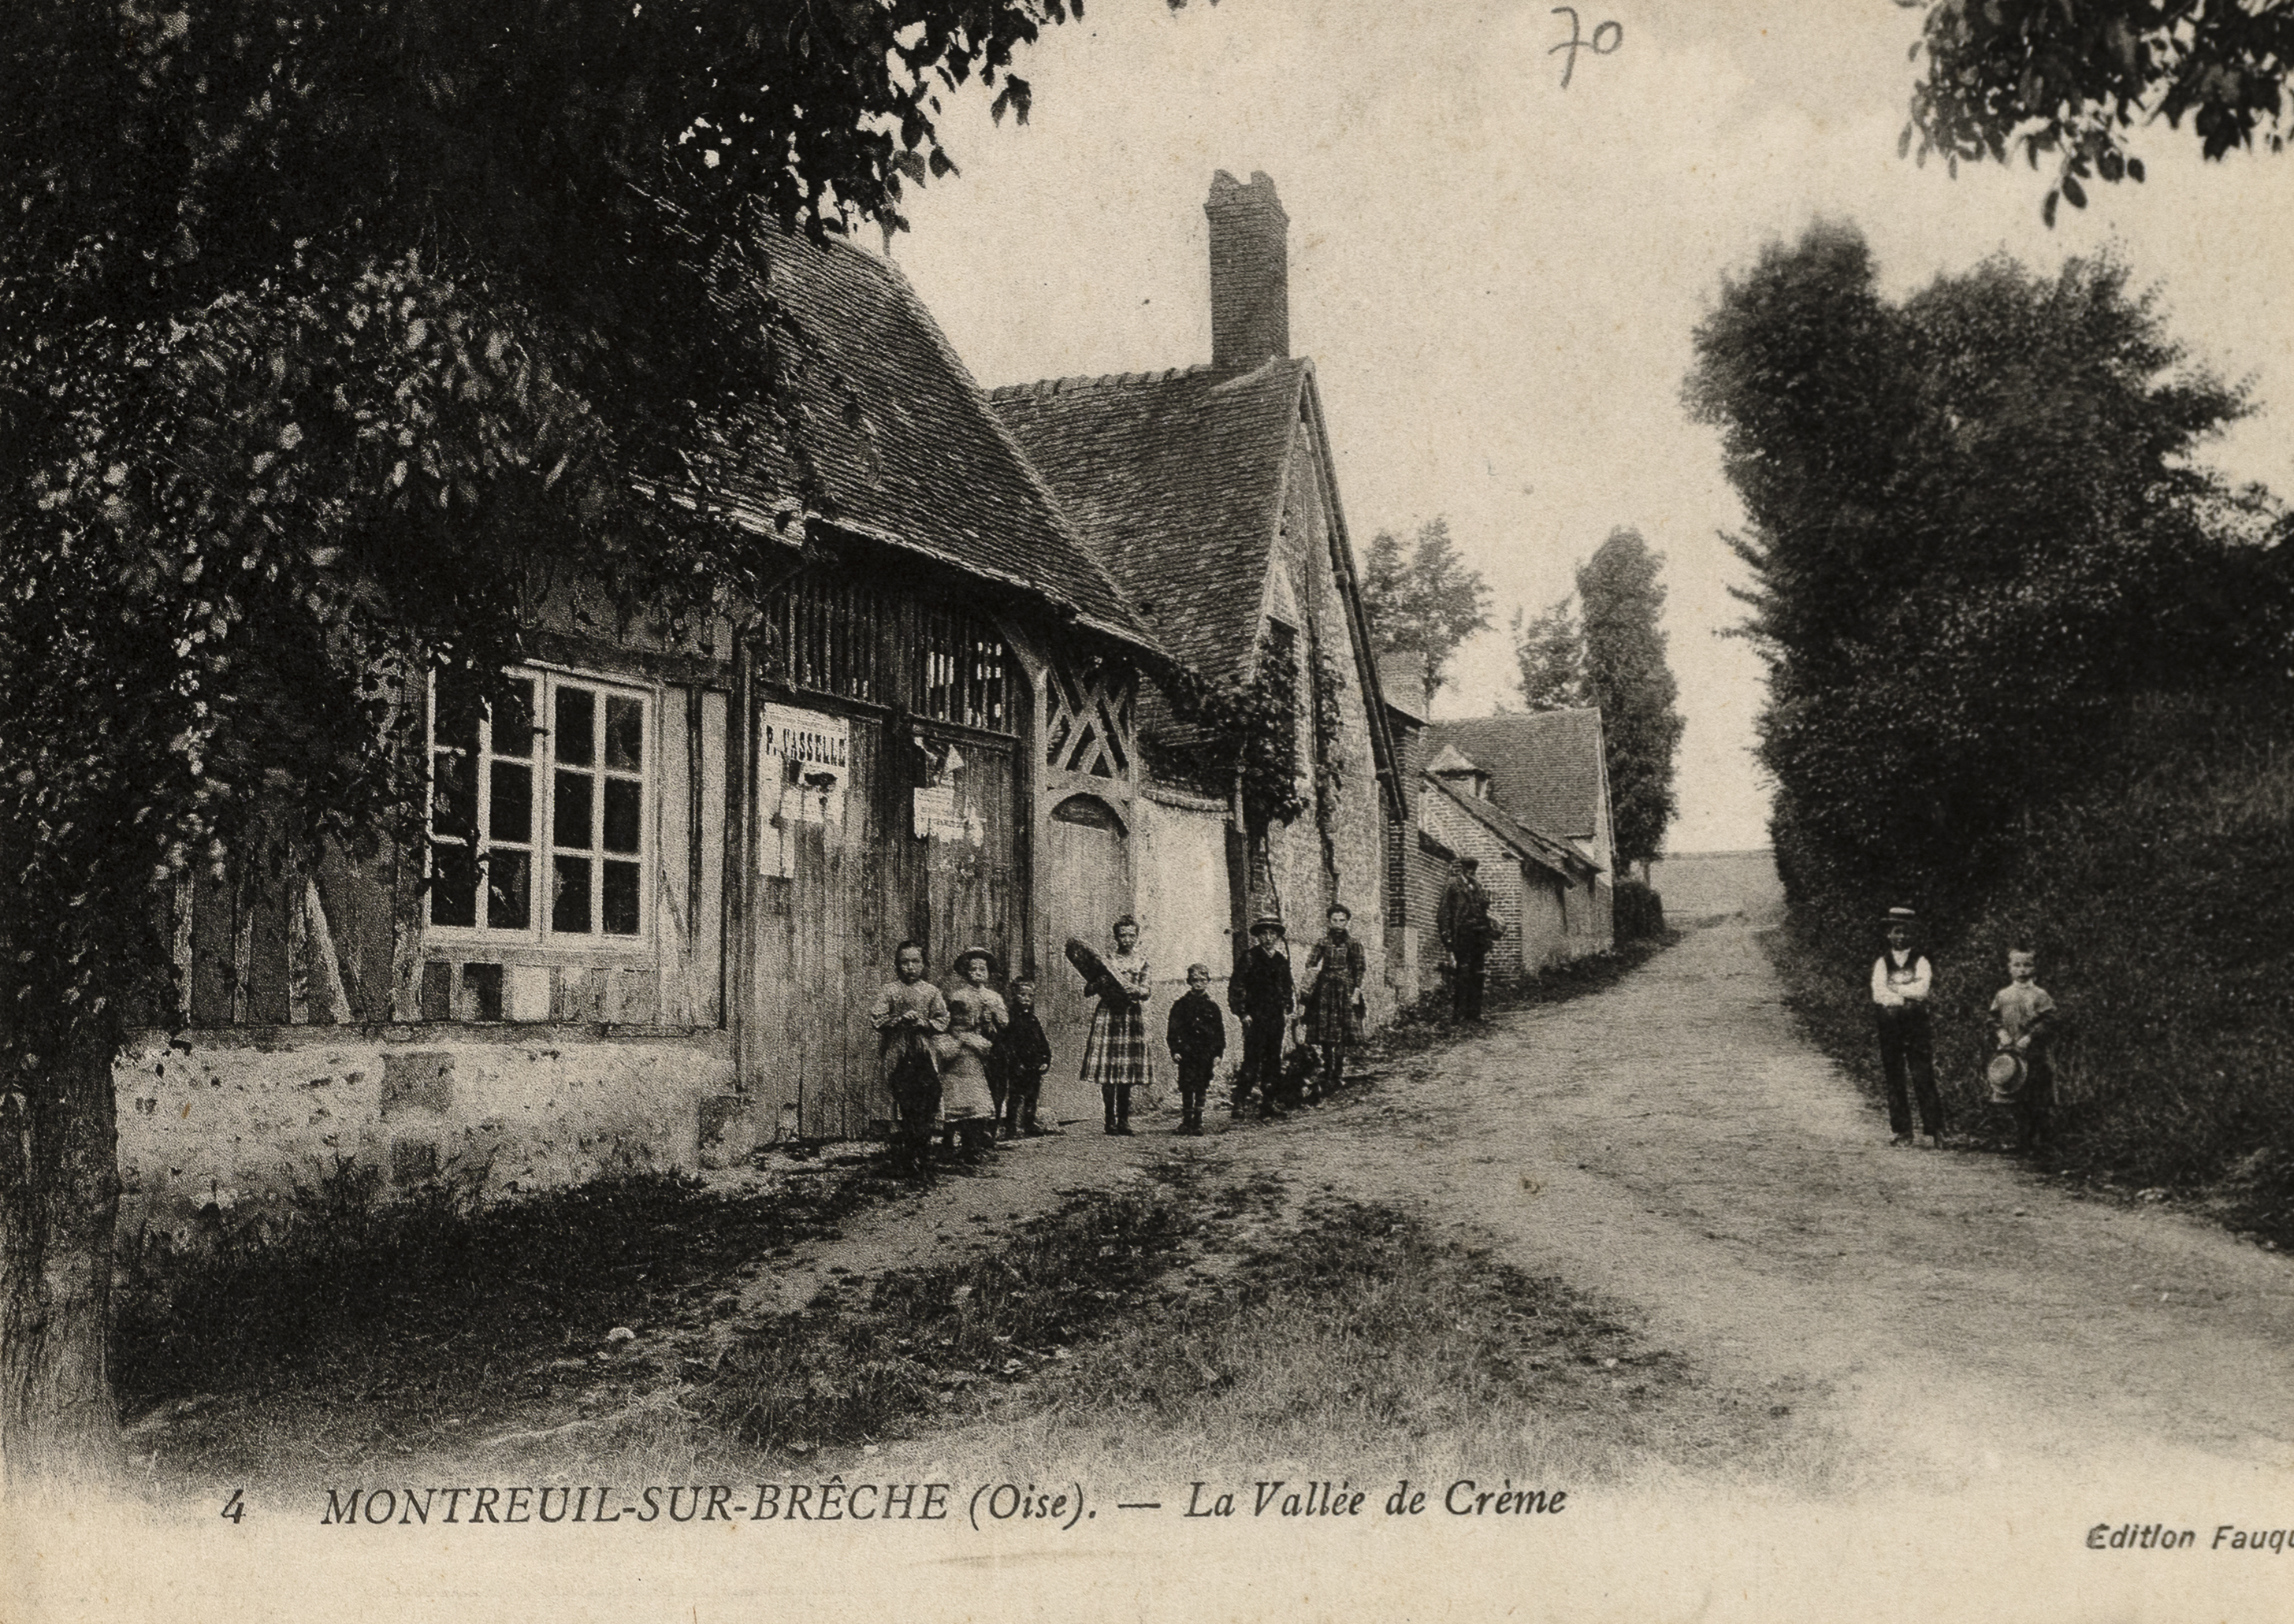 Le village de Montreuil-sur-Brêche